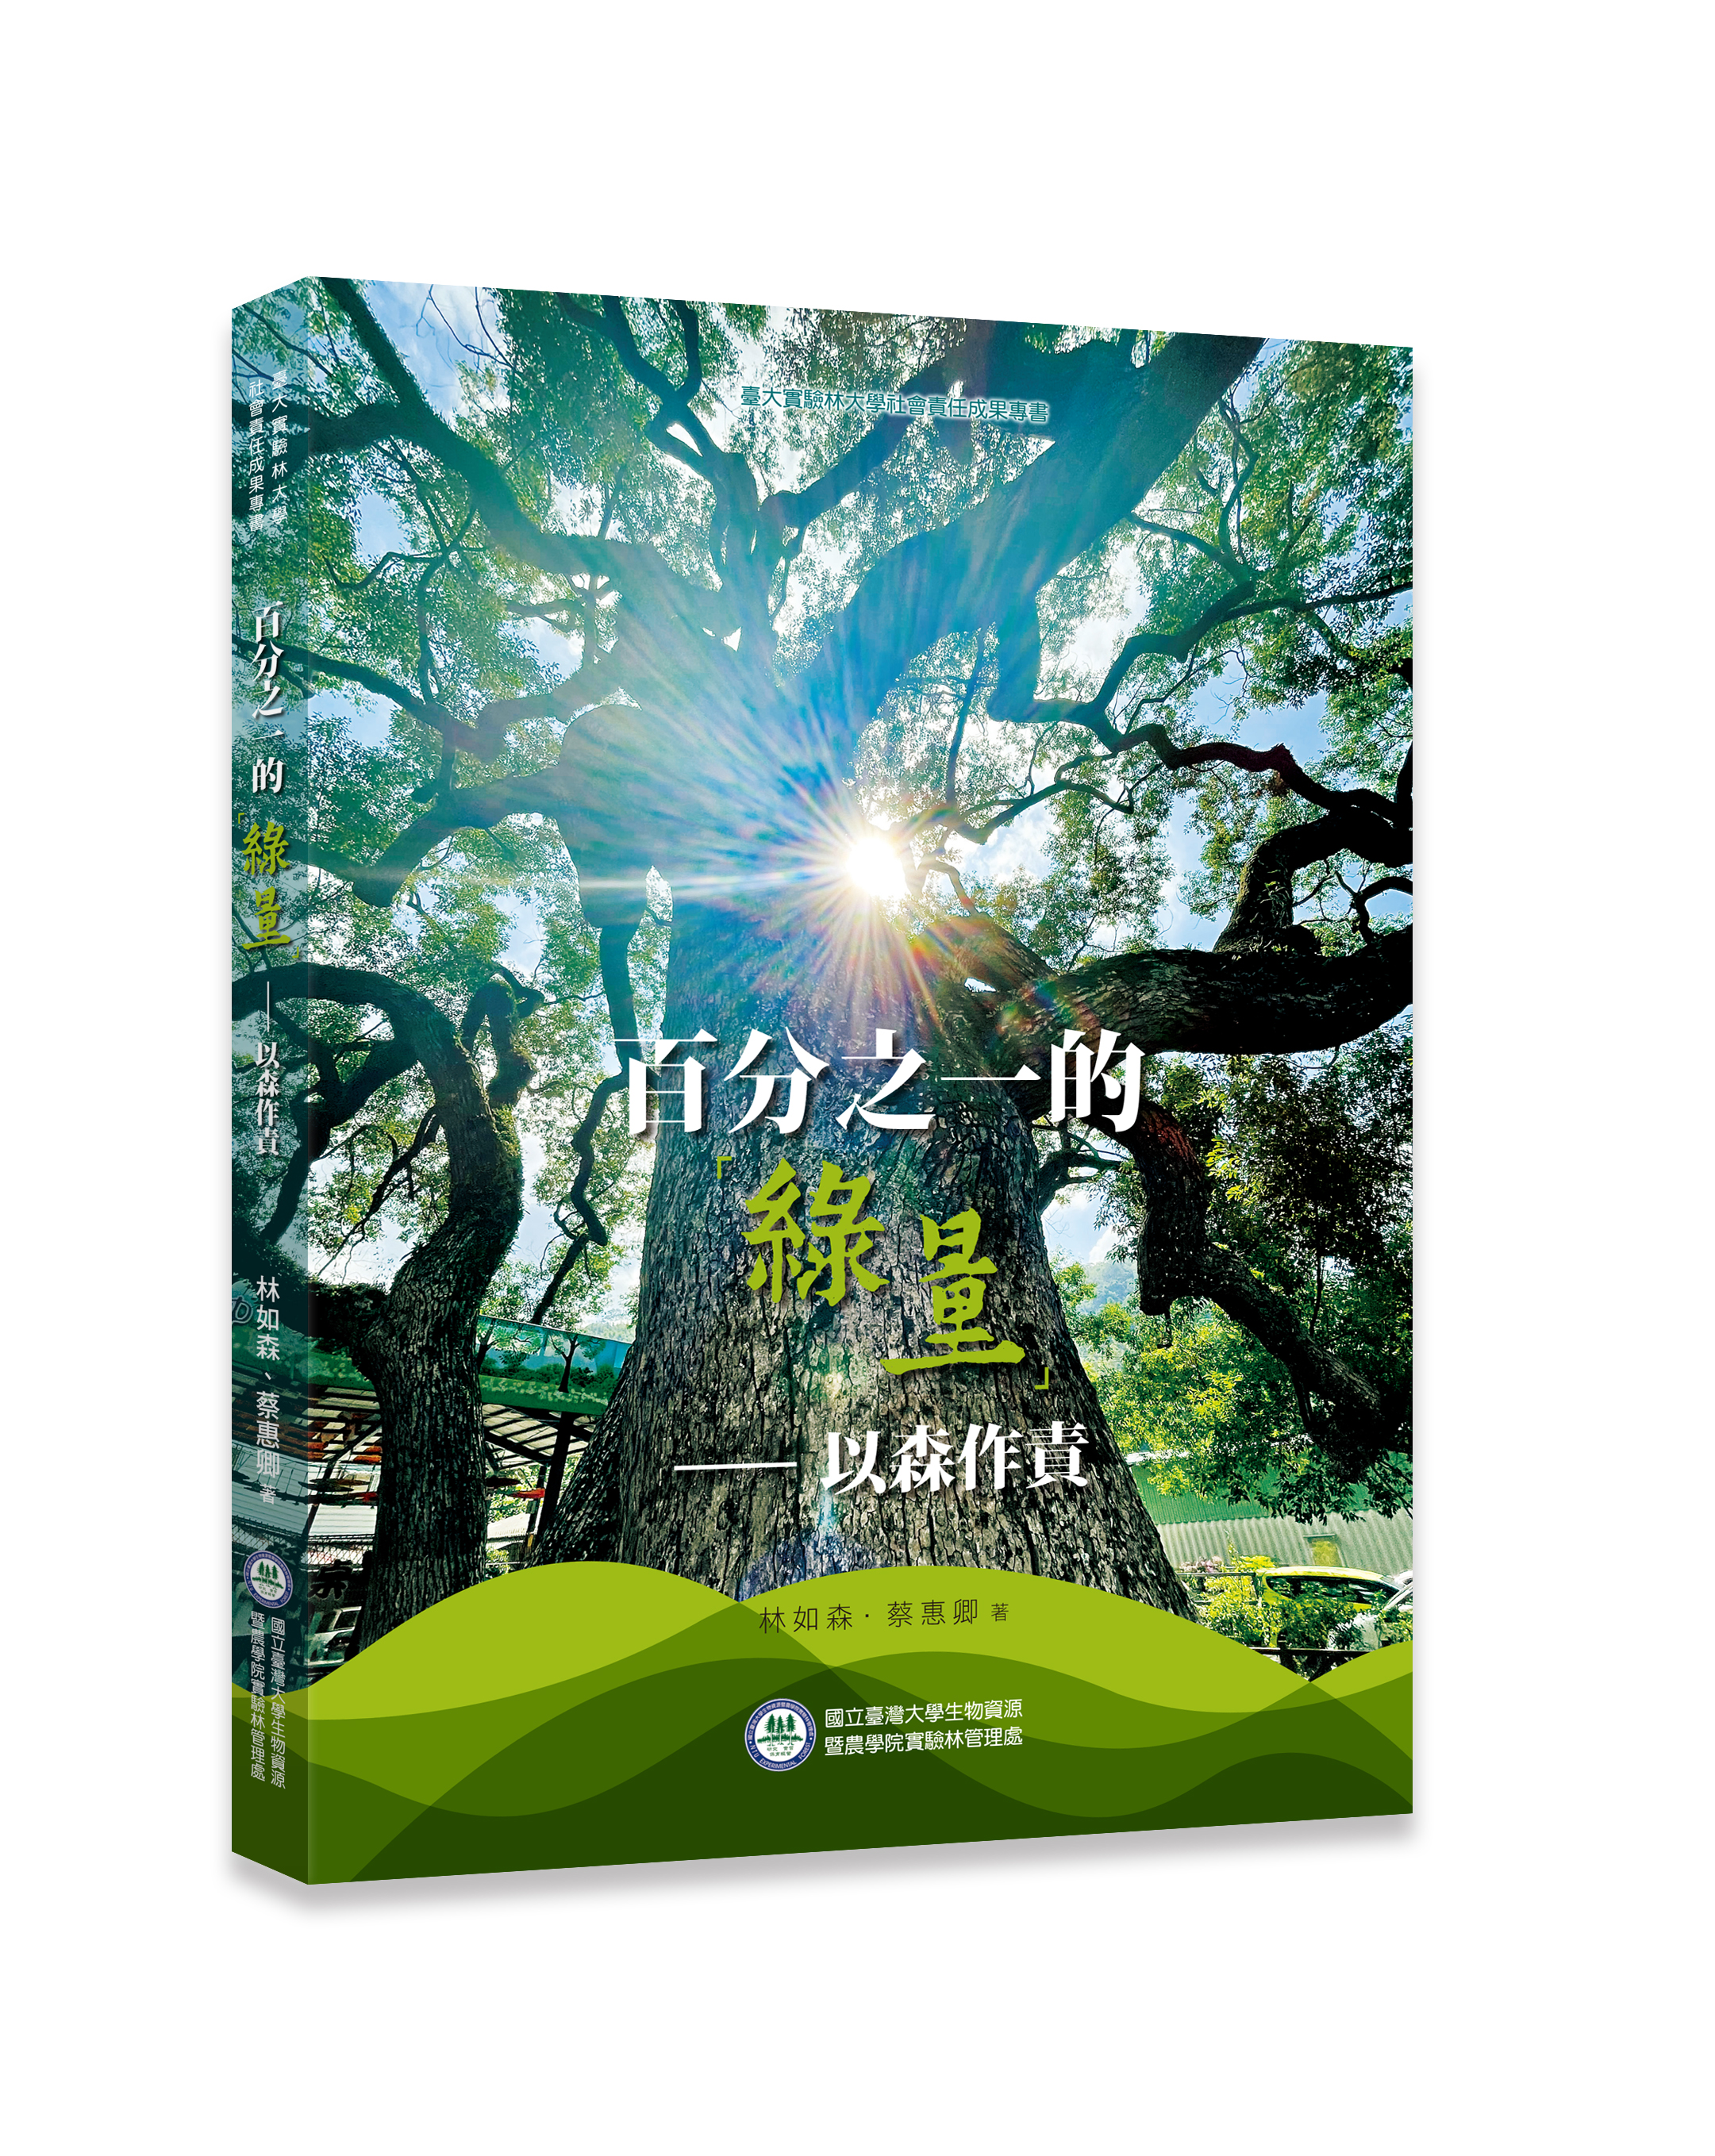 百分之一的「綠量」-以森作責: 臺大實驗林大學社會責任成果專書